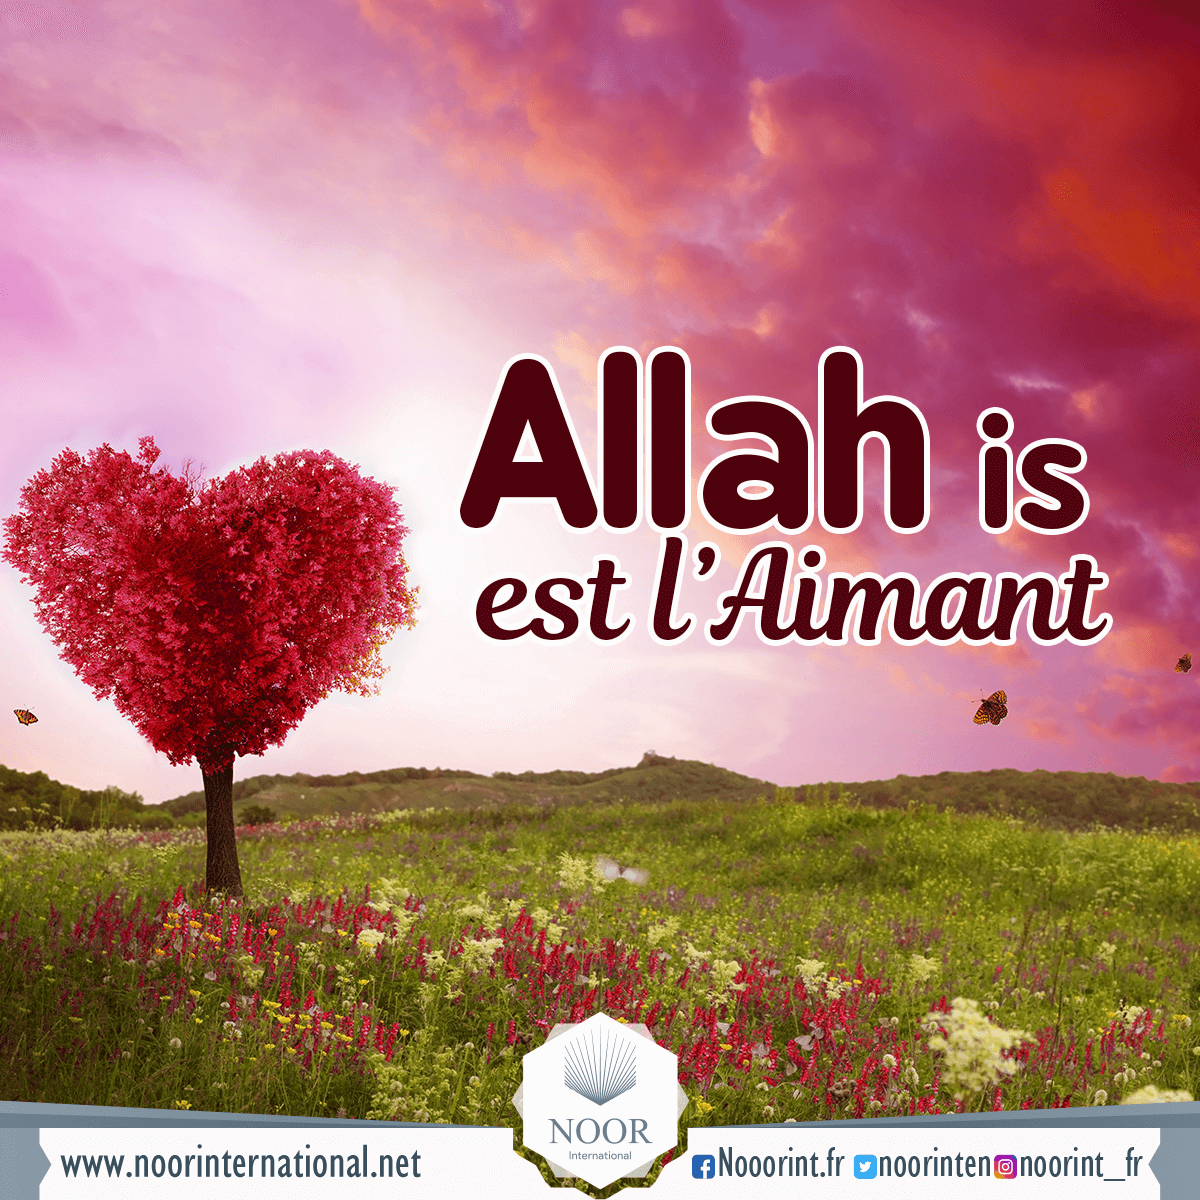 Allah est l’Aimant